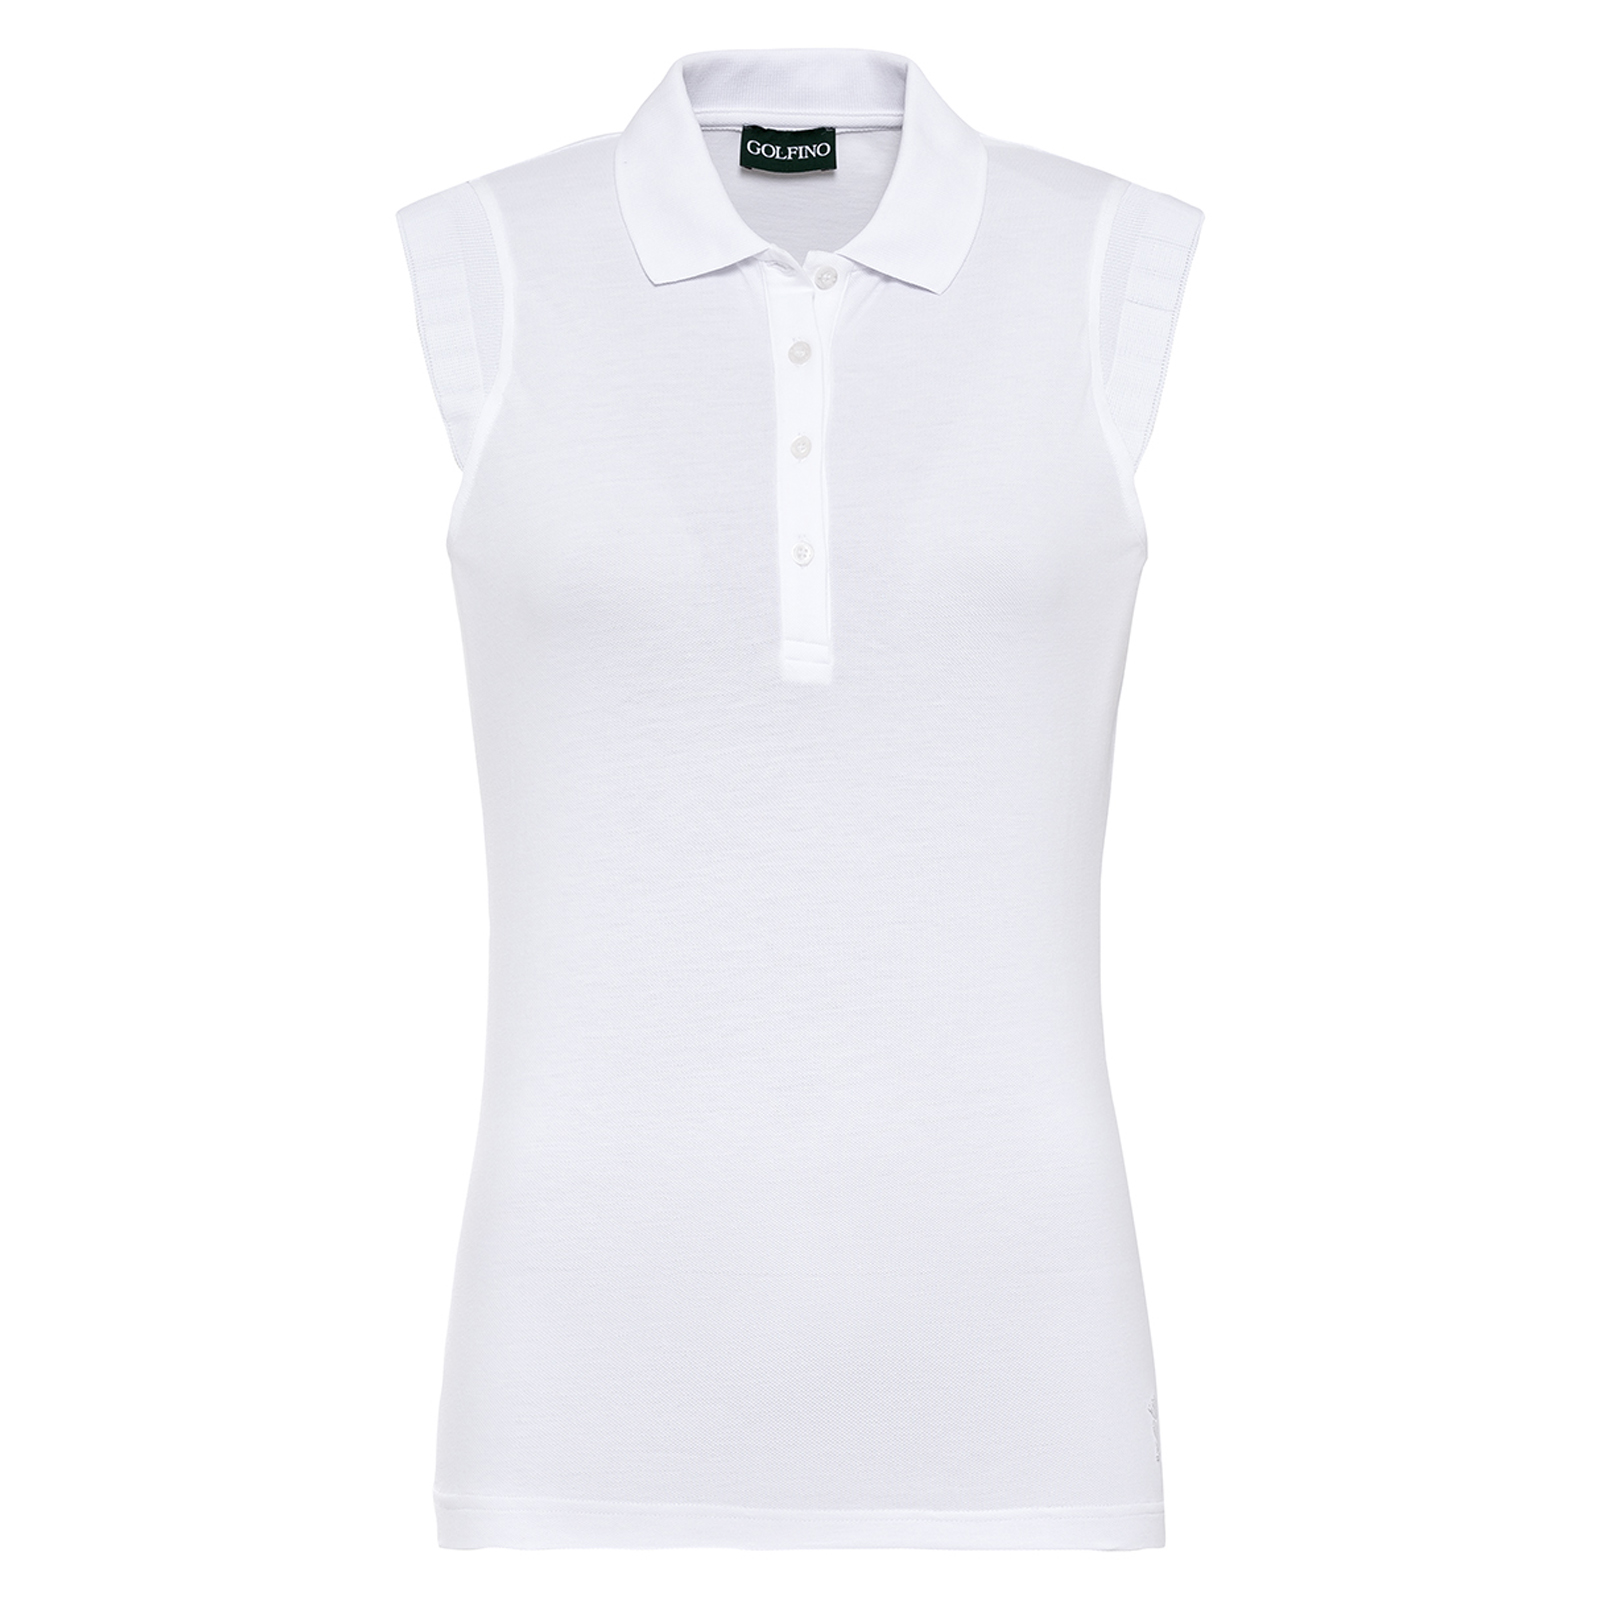 Ærmeløs dame-golfpoloshirt med solbeskyttelse og ekstra stretchkomfort i slim fit